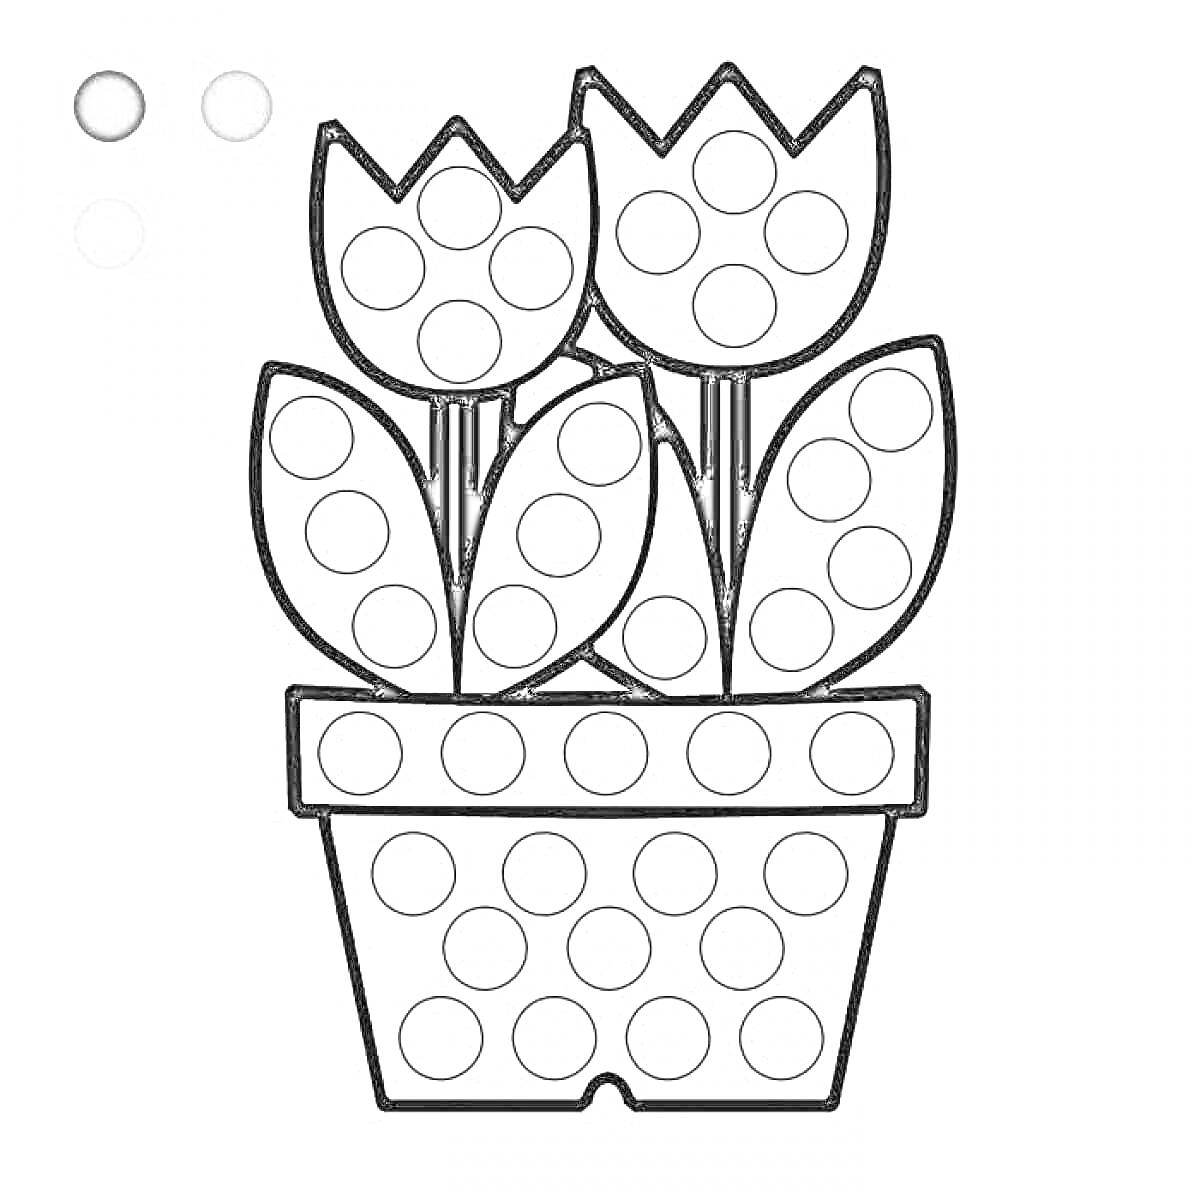 цветочный горшок с тремя тюльпанами, листьями и кругами для пальчиков